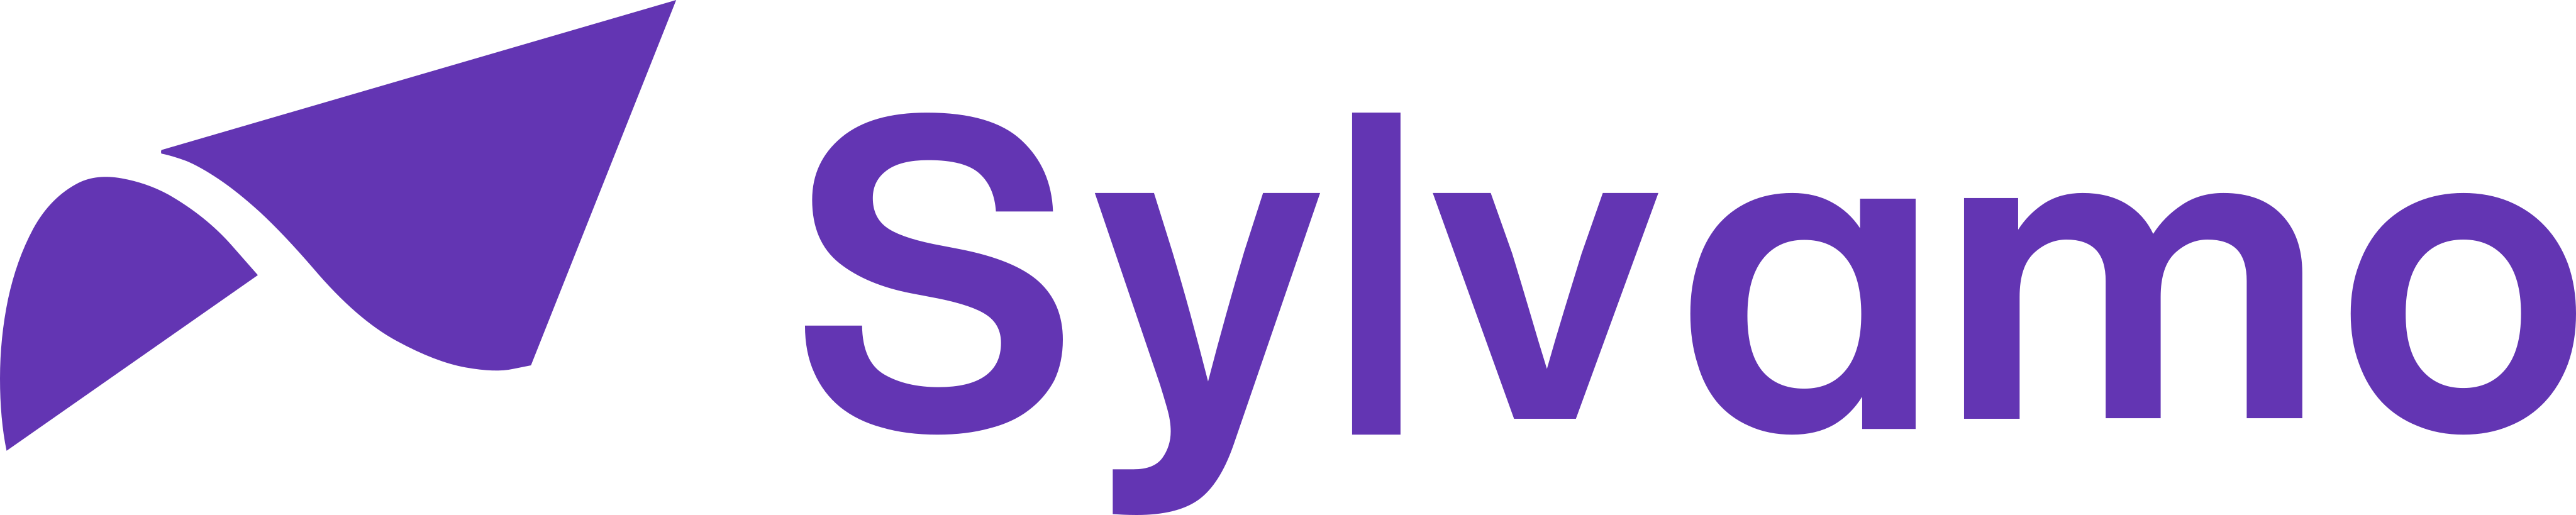 sylvamo logo 1 - Sylvamo Logo